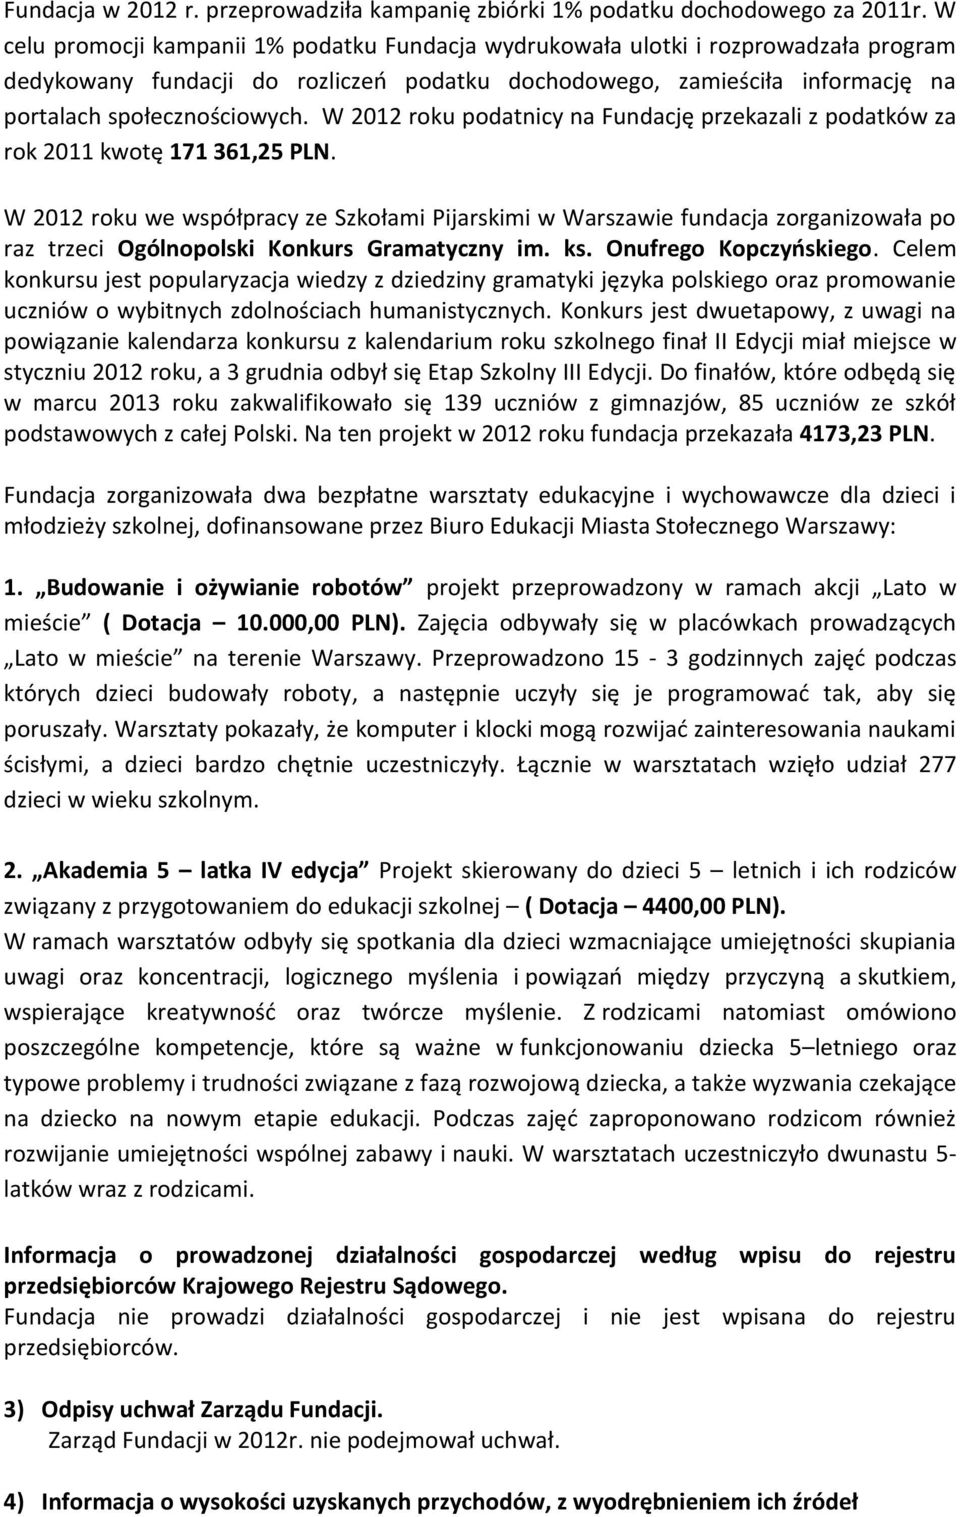 W 2012 roku podatnicy na Fundację przekazali z podatków za rok 2011 kwotę 171 361,25 PLN.